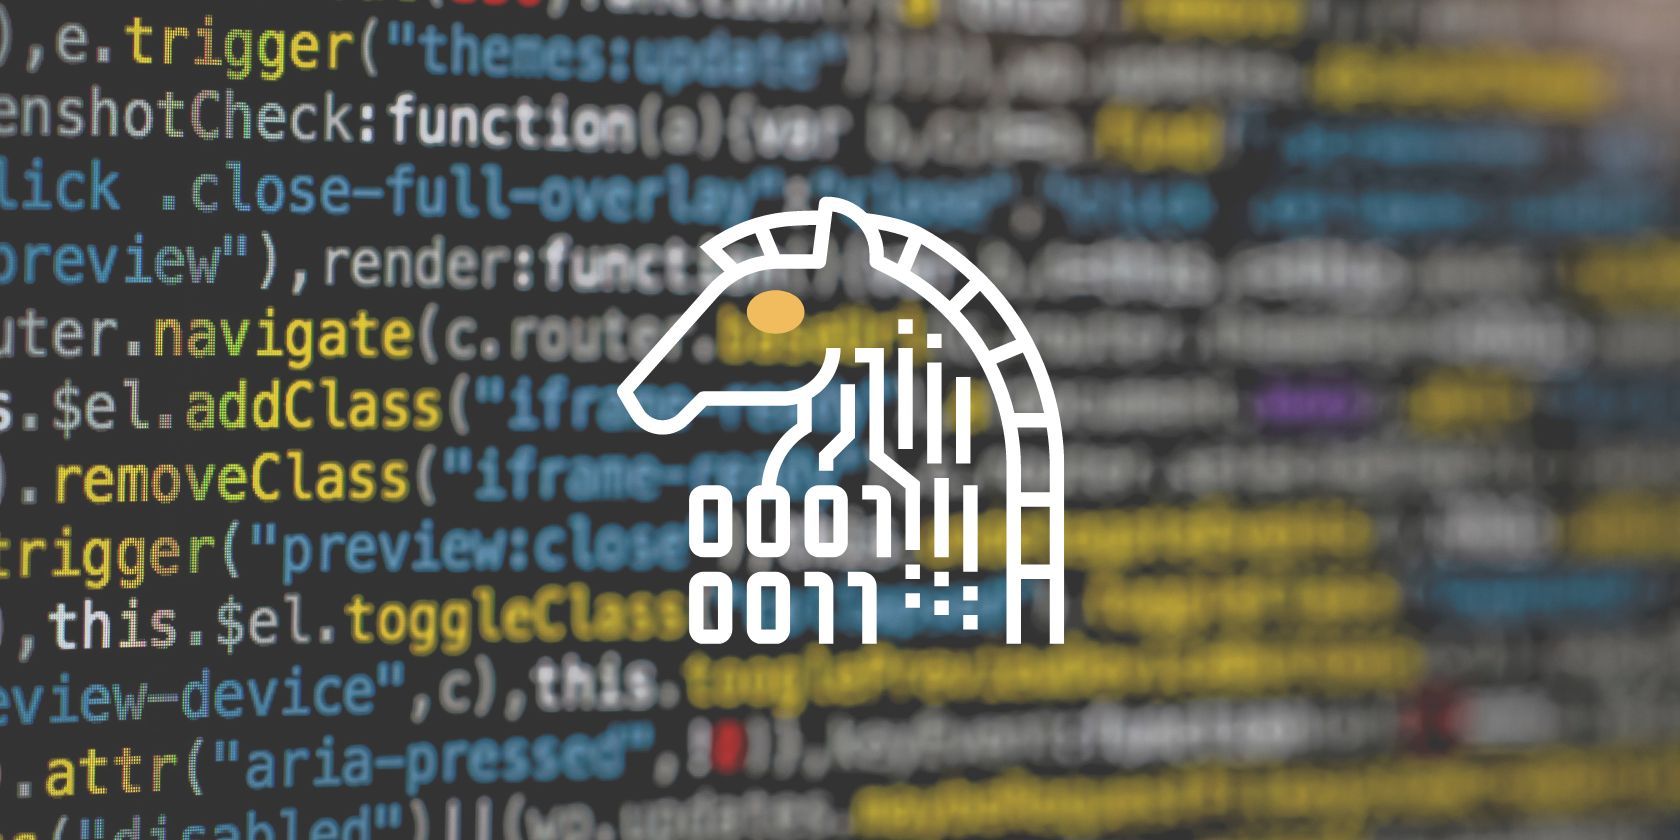 Chạy mã trên màn hình với hình ảnh con ngựa thành Troy kỹ thuật số 